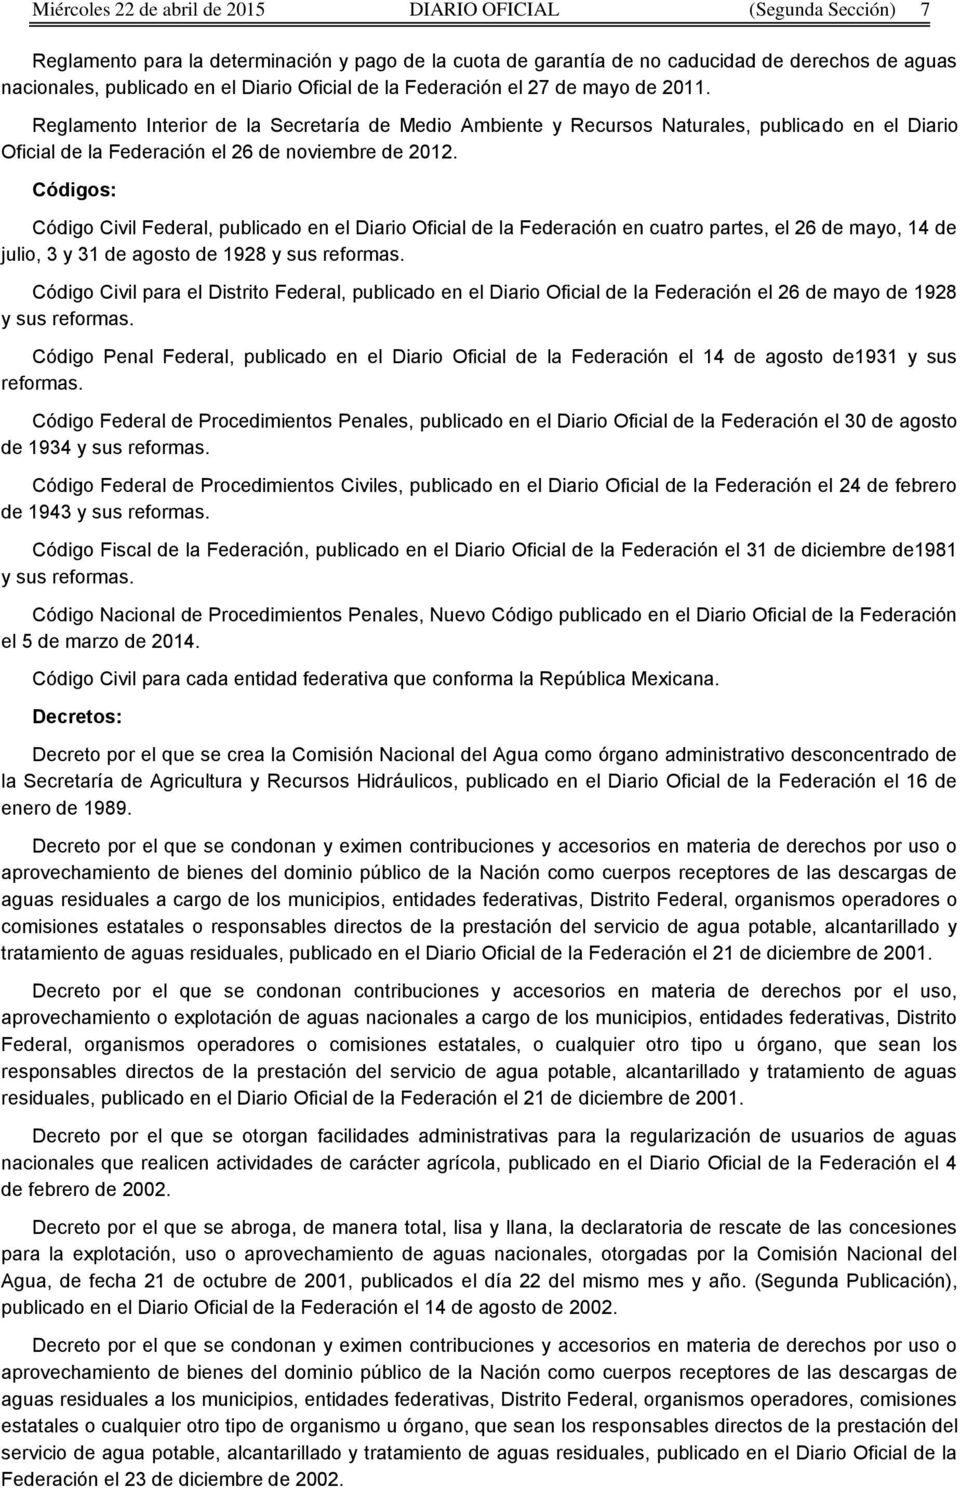 Reglamento Interior de la Secretaría de Medio Ambiente y Recursos Naturales, publicado en el Diario Oficial de la Federación el 26 de noviembre de 2012.